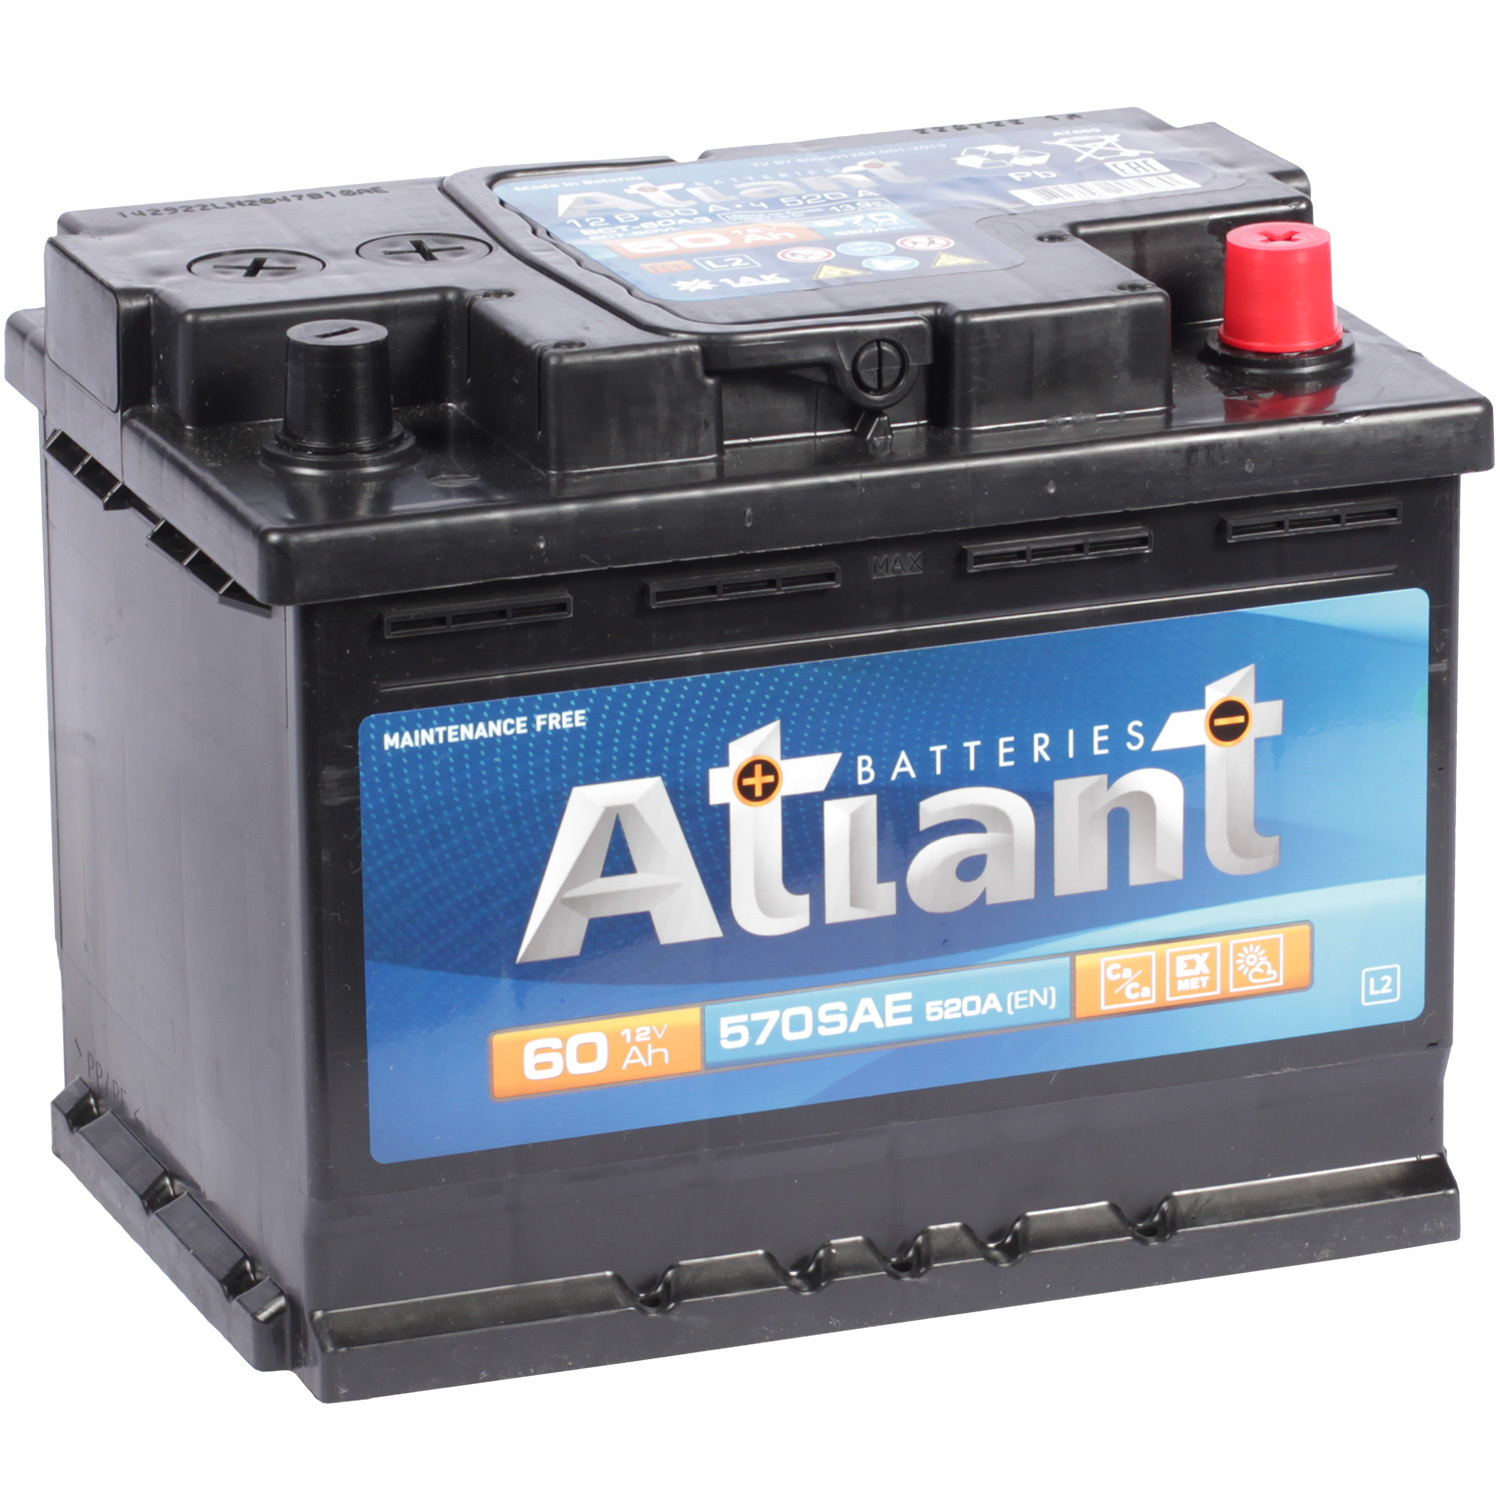 Atlant Автомобильный аккумулятор Atlant 60 Ач обратная полярность L2 sarma автомобильный аккумулятор sarma 60 ач обратная полярность l2